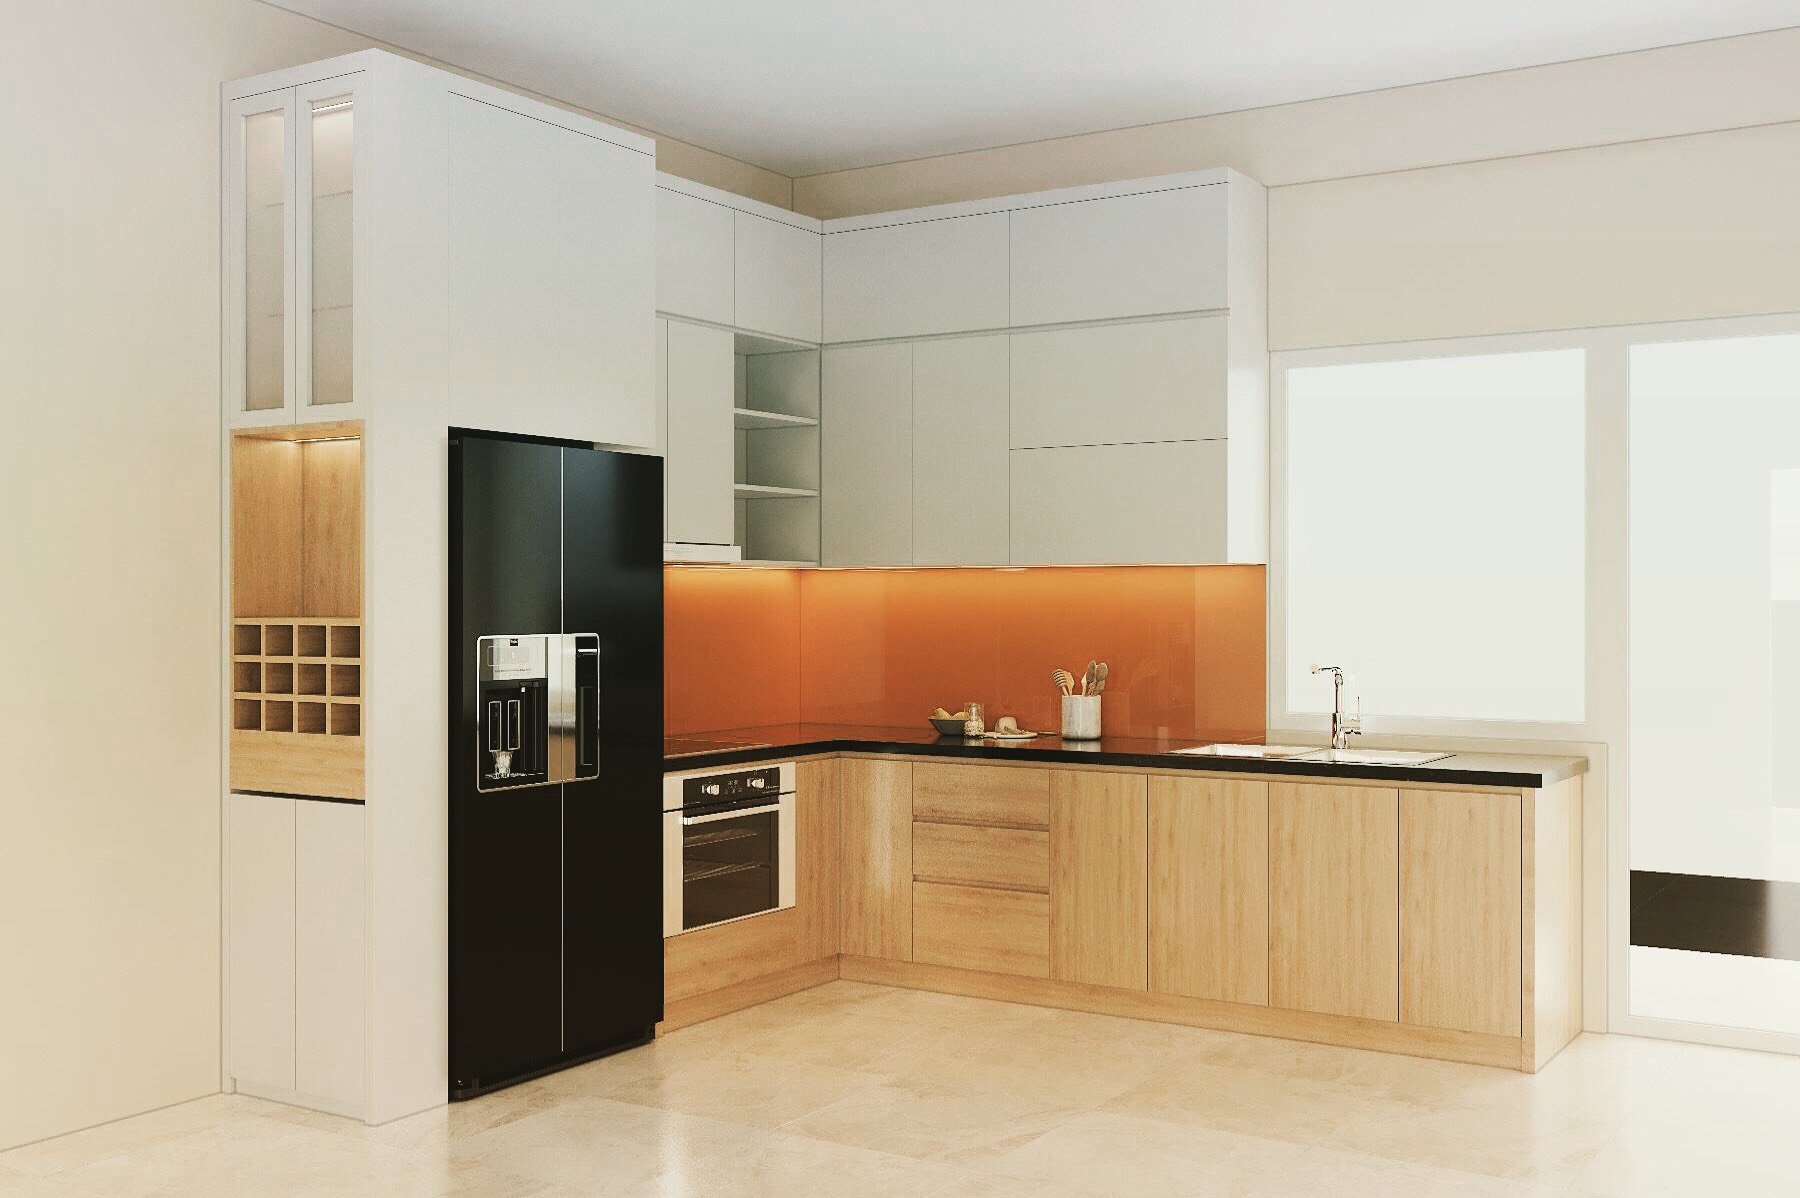 Tủ bếp cốt gỗ An Cường MDF chống ẩm, phủ Melamine, nội thất Hà Nội sẽ là thứ mà bạn không thể bỏ qua khi sắp xếp nội thất trang trí cho ngôi nhà của mình. Với chất lượng sản phẩm và tính năng chống ẩm, tủ bếp này sẽ trở thành một giải pháp công nghệ tốt nhất cho căn bếp của bạn!